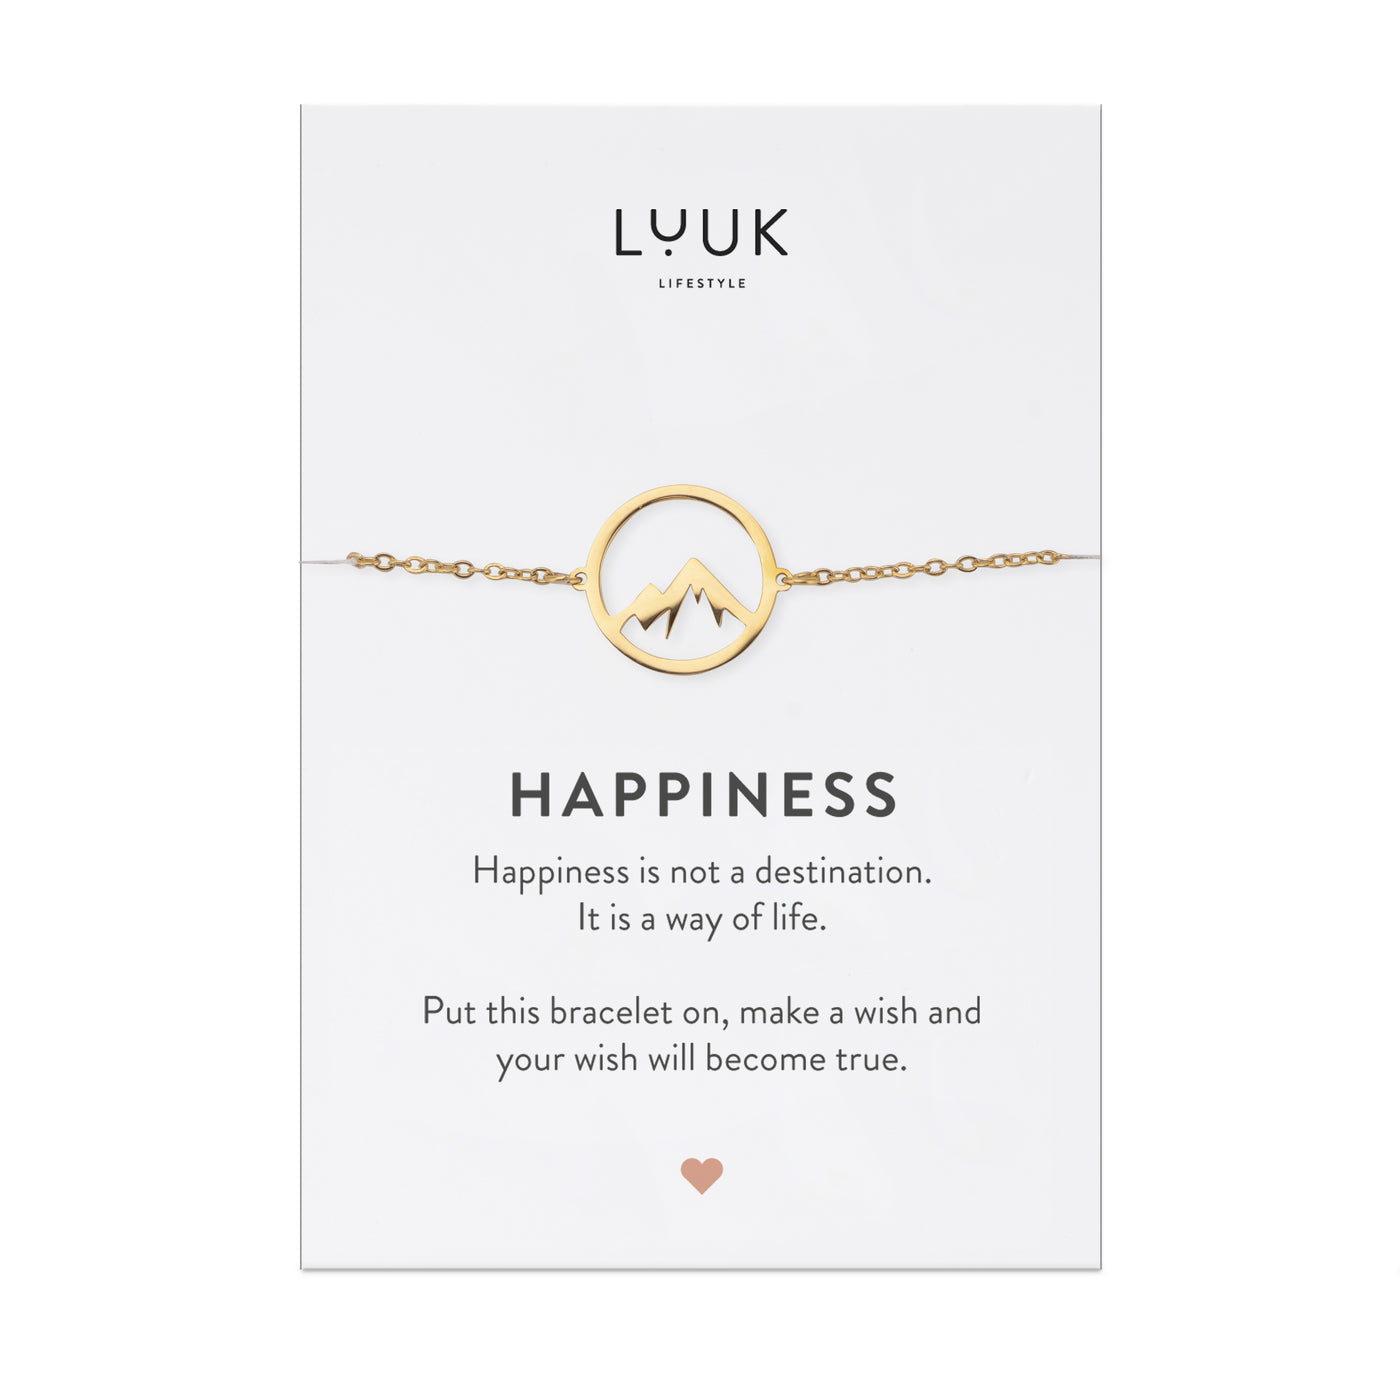 Goldenes Armband mit Bergspitze Anhänger auf Happines Spruchkarte von der Brand Luuk Lifestyle